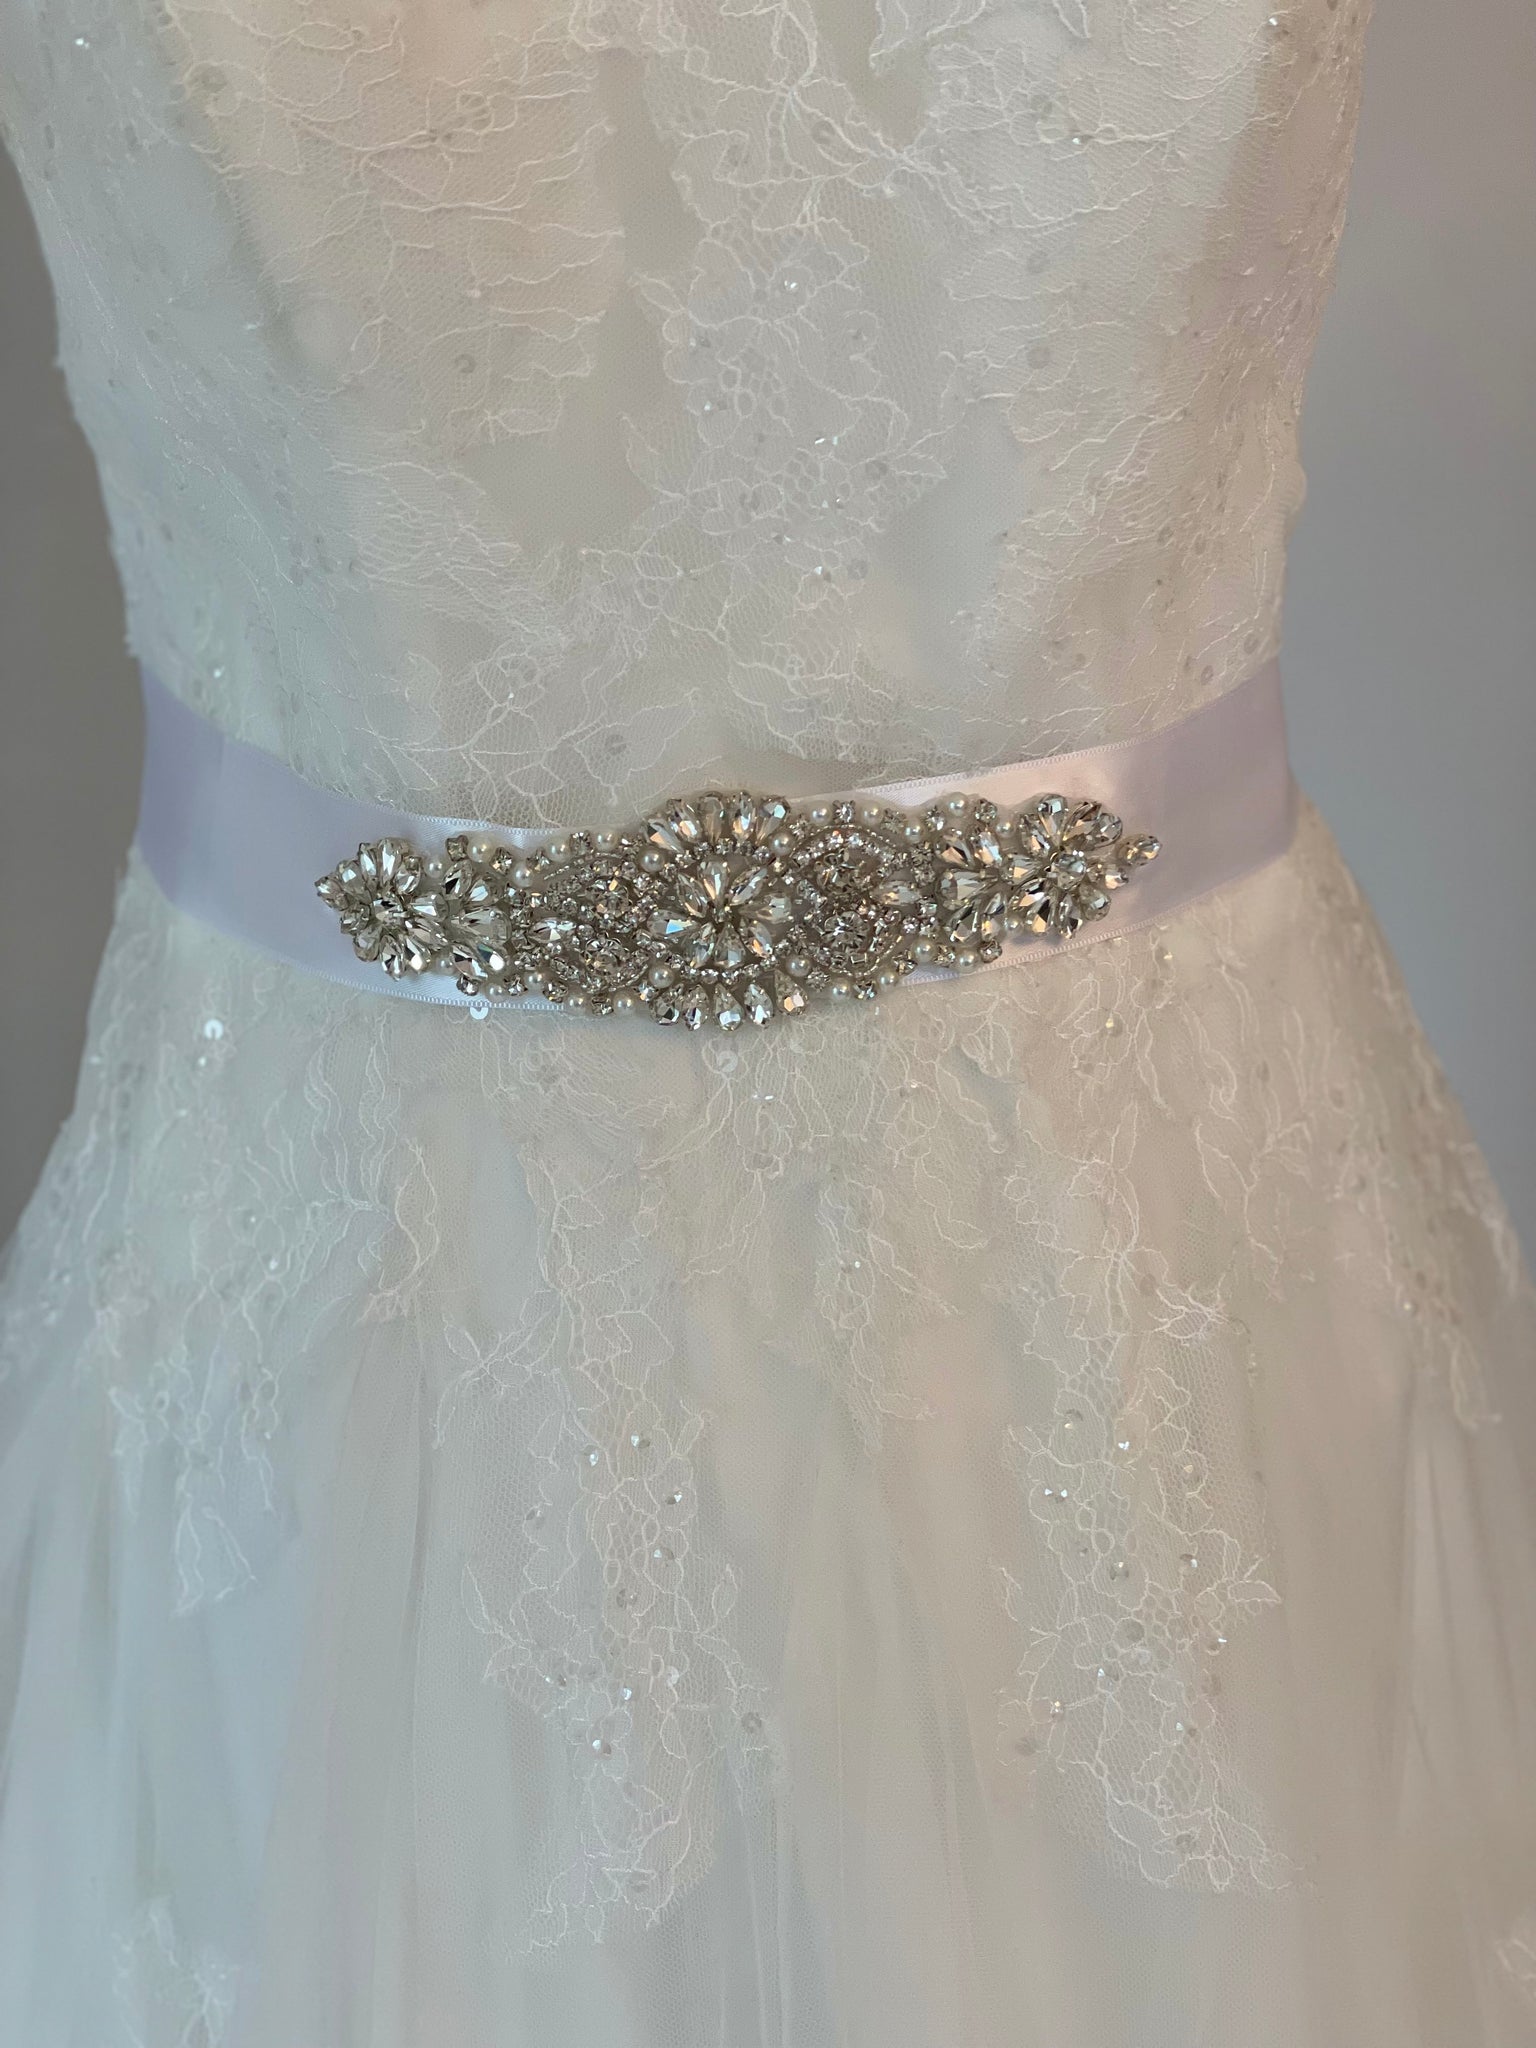 Midjeband med eleganta stenar & pärlor vit till bruden/bröllopet.